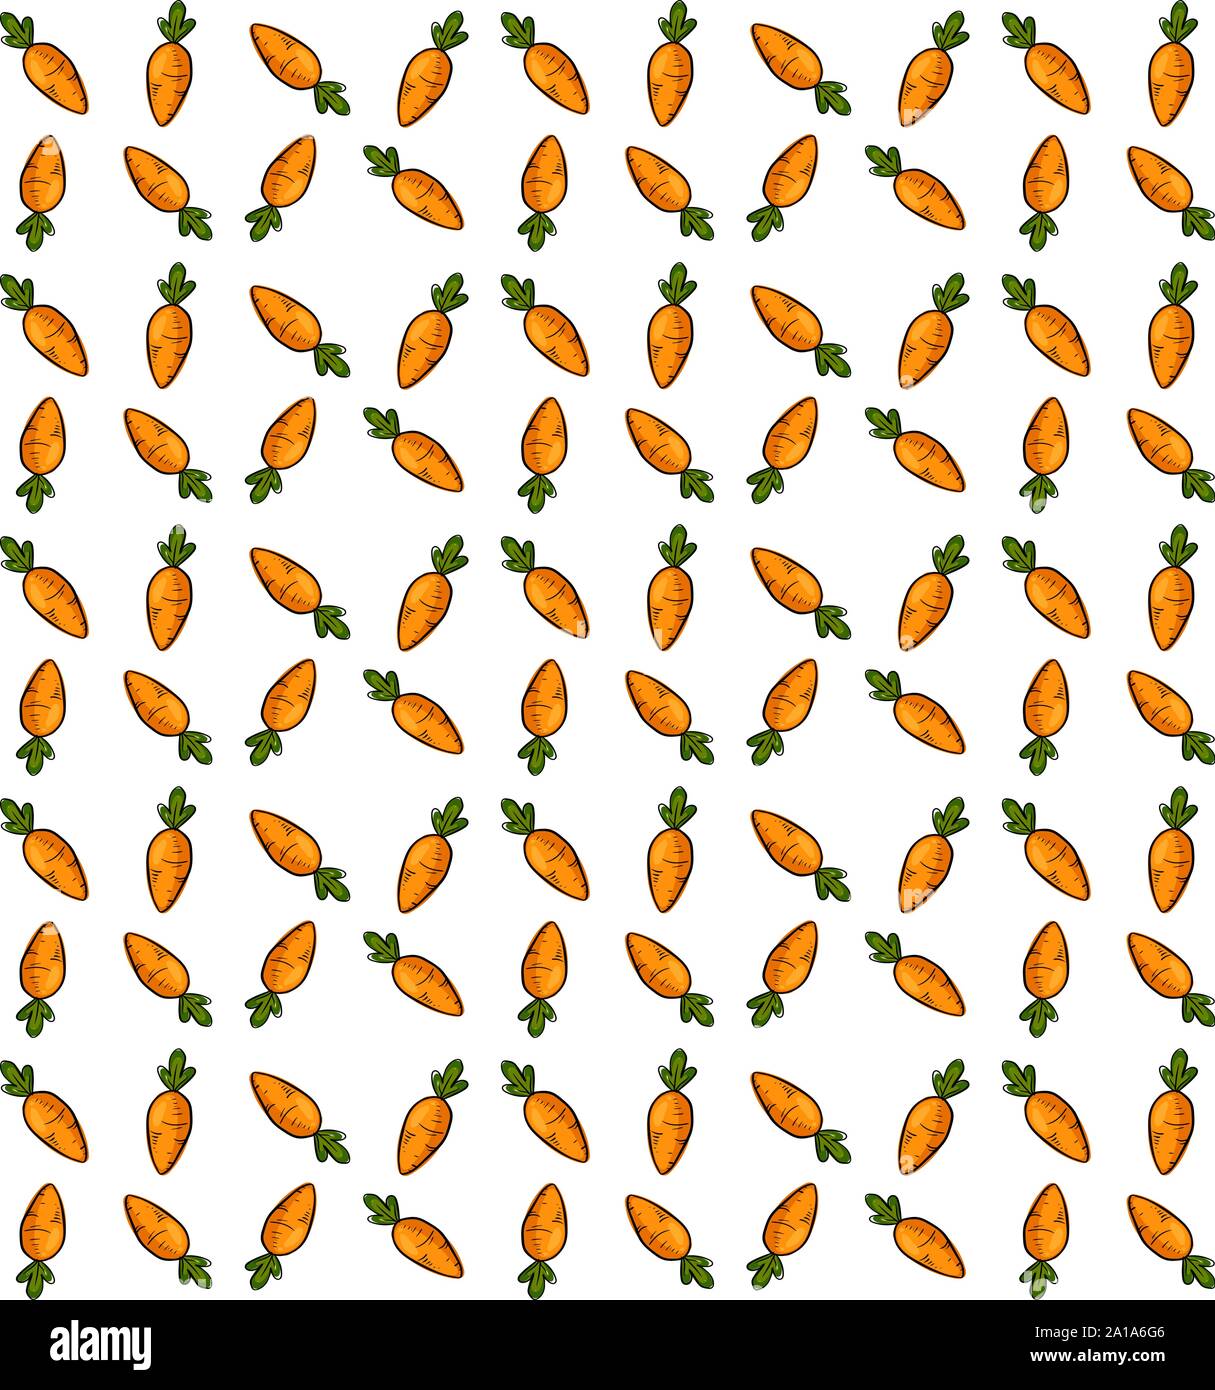 Carrots wallpaper, illustration, vector on white background. Stock Vector